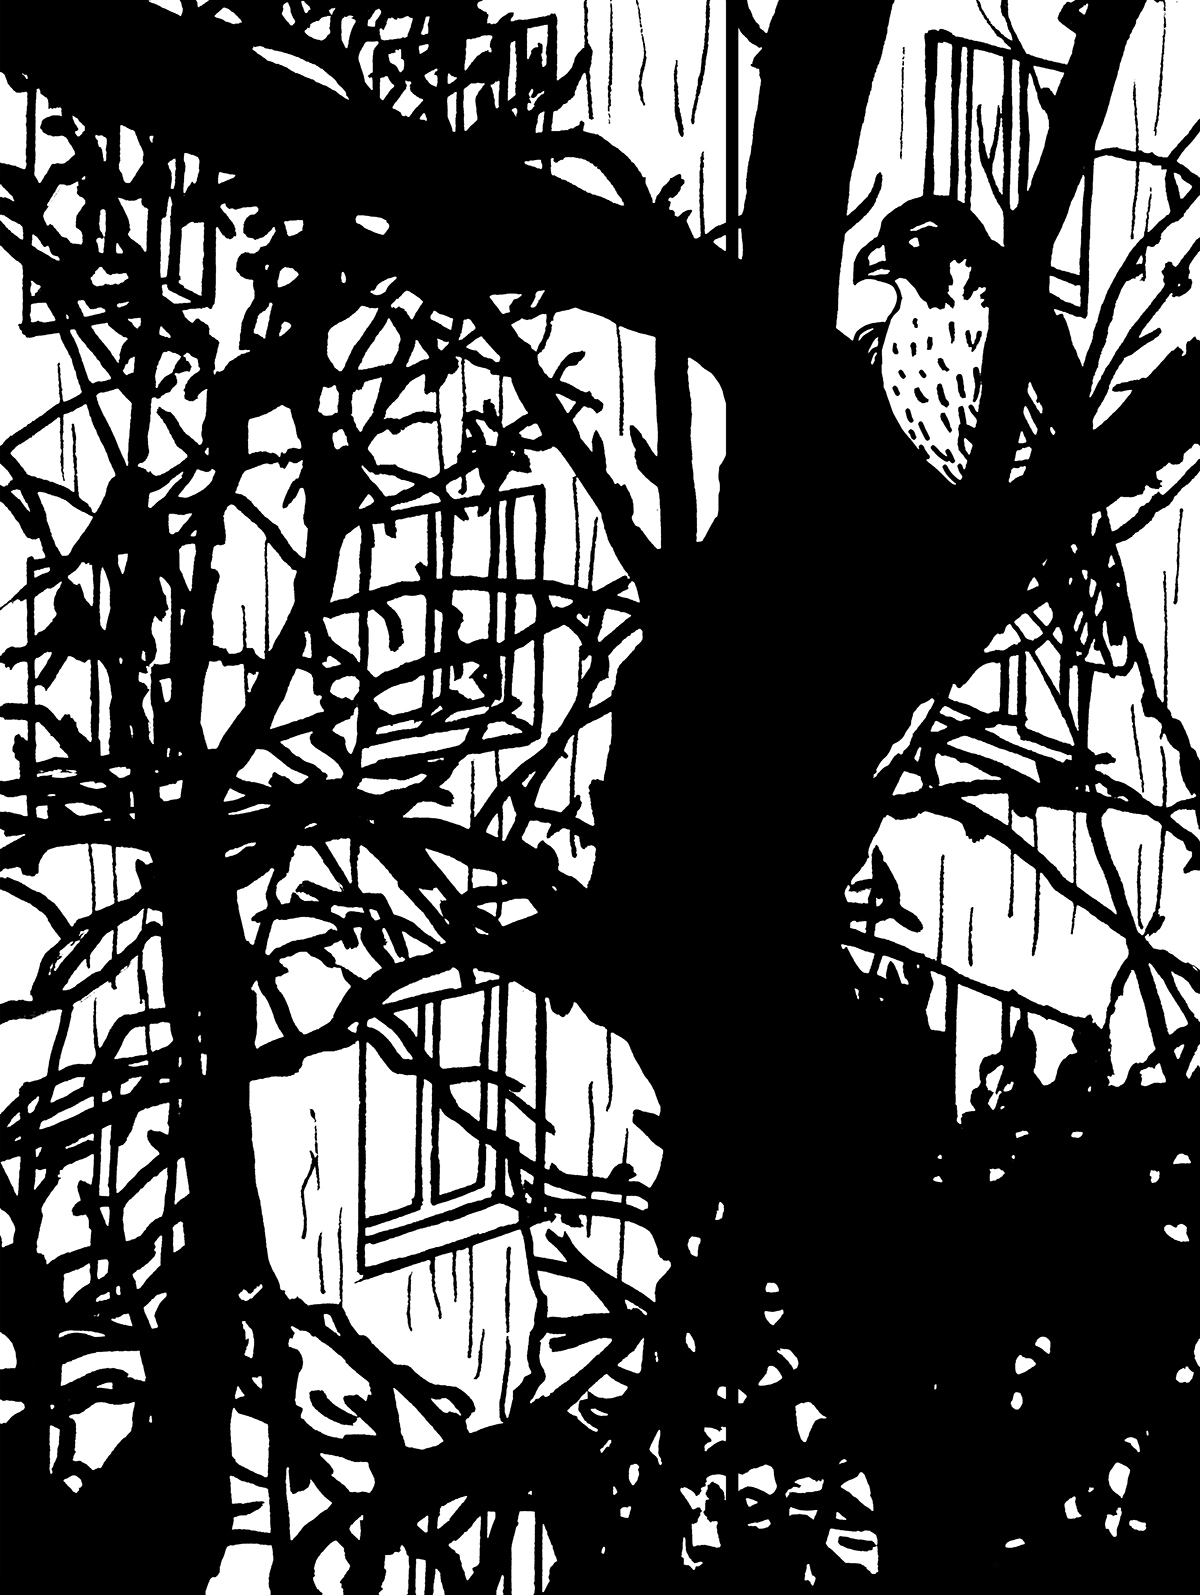 Ptak z zakrzywionym dziobem i jasnym upierzeniem brzucha siedzi między konarami drzewa o grubym, ciemnym i zakrzywionym pniu. W tle gęsta sieć gałęzi i prześwitująca ściana bloku mieszkalnego.